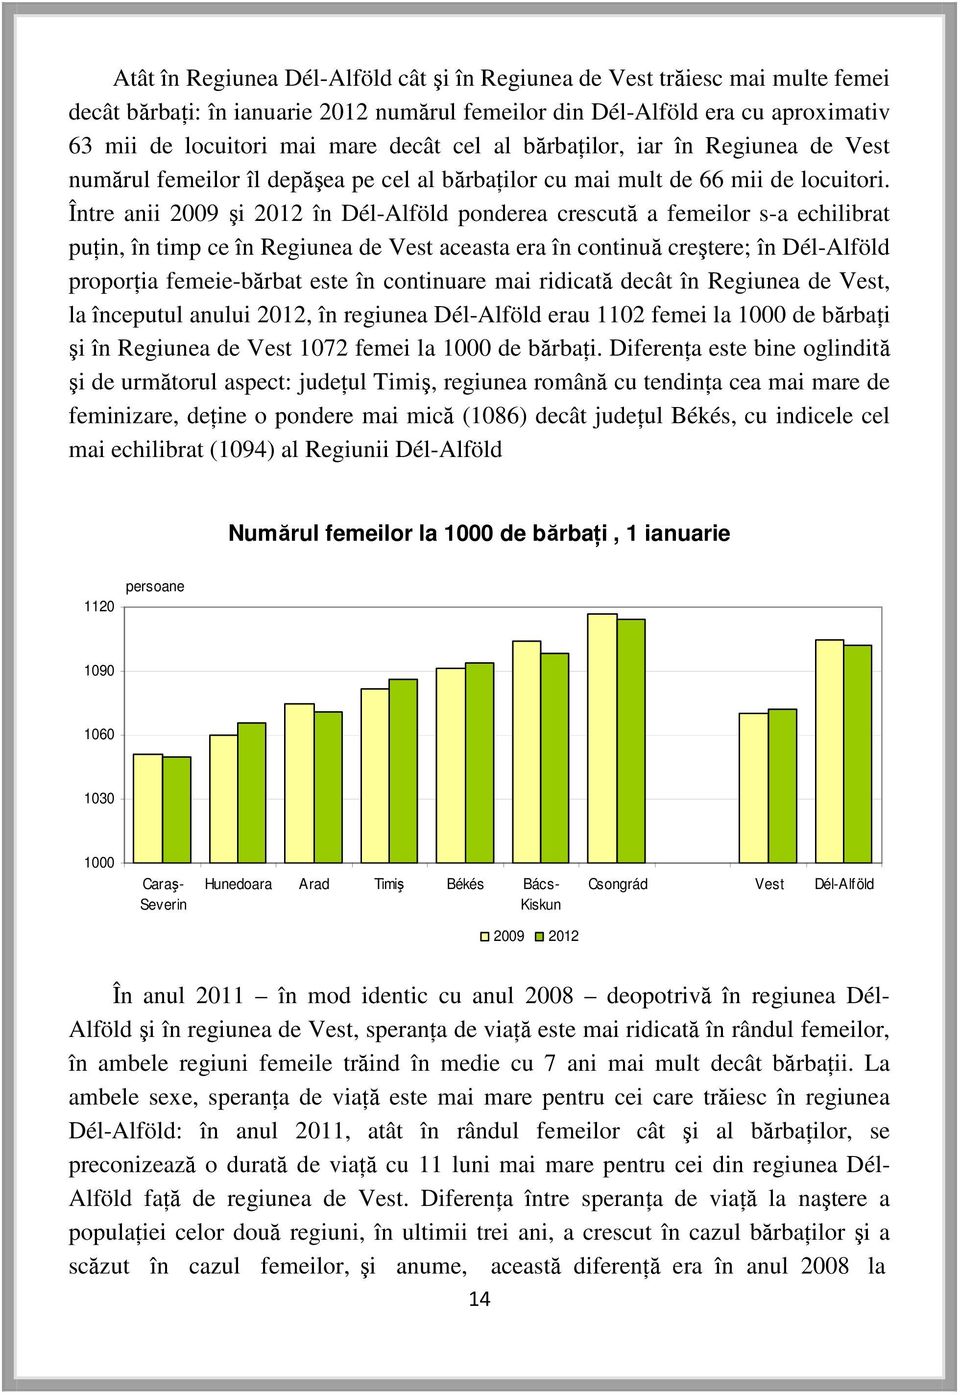 Între anii 2009 şi 2012 în Dél-Alföld ponderea crescută a femeilor s-a echilibrat puţin, în timp ce în Regiunea de Vest aceasta era în continuă creştere; în Dél-Alföld proporţia femeie-bărbat este în